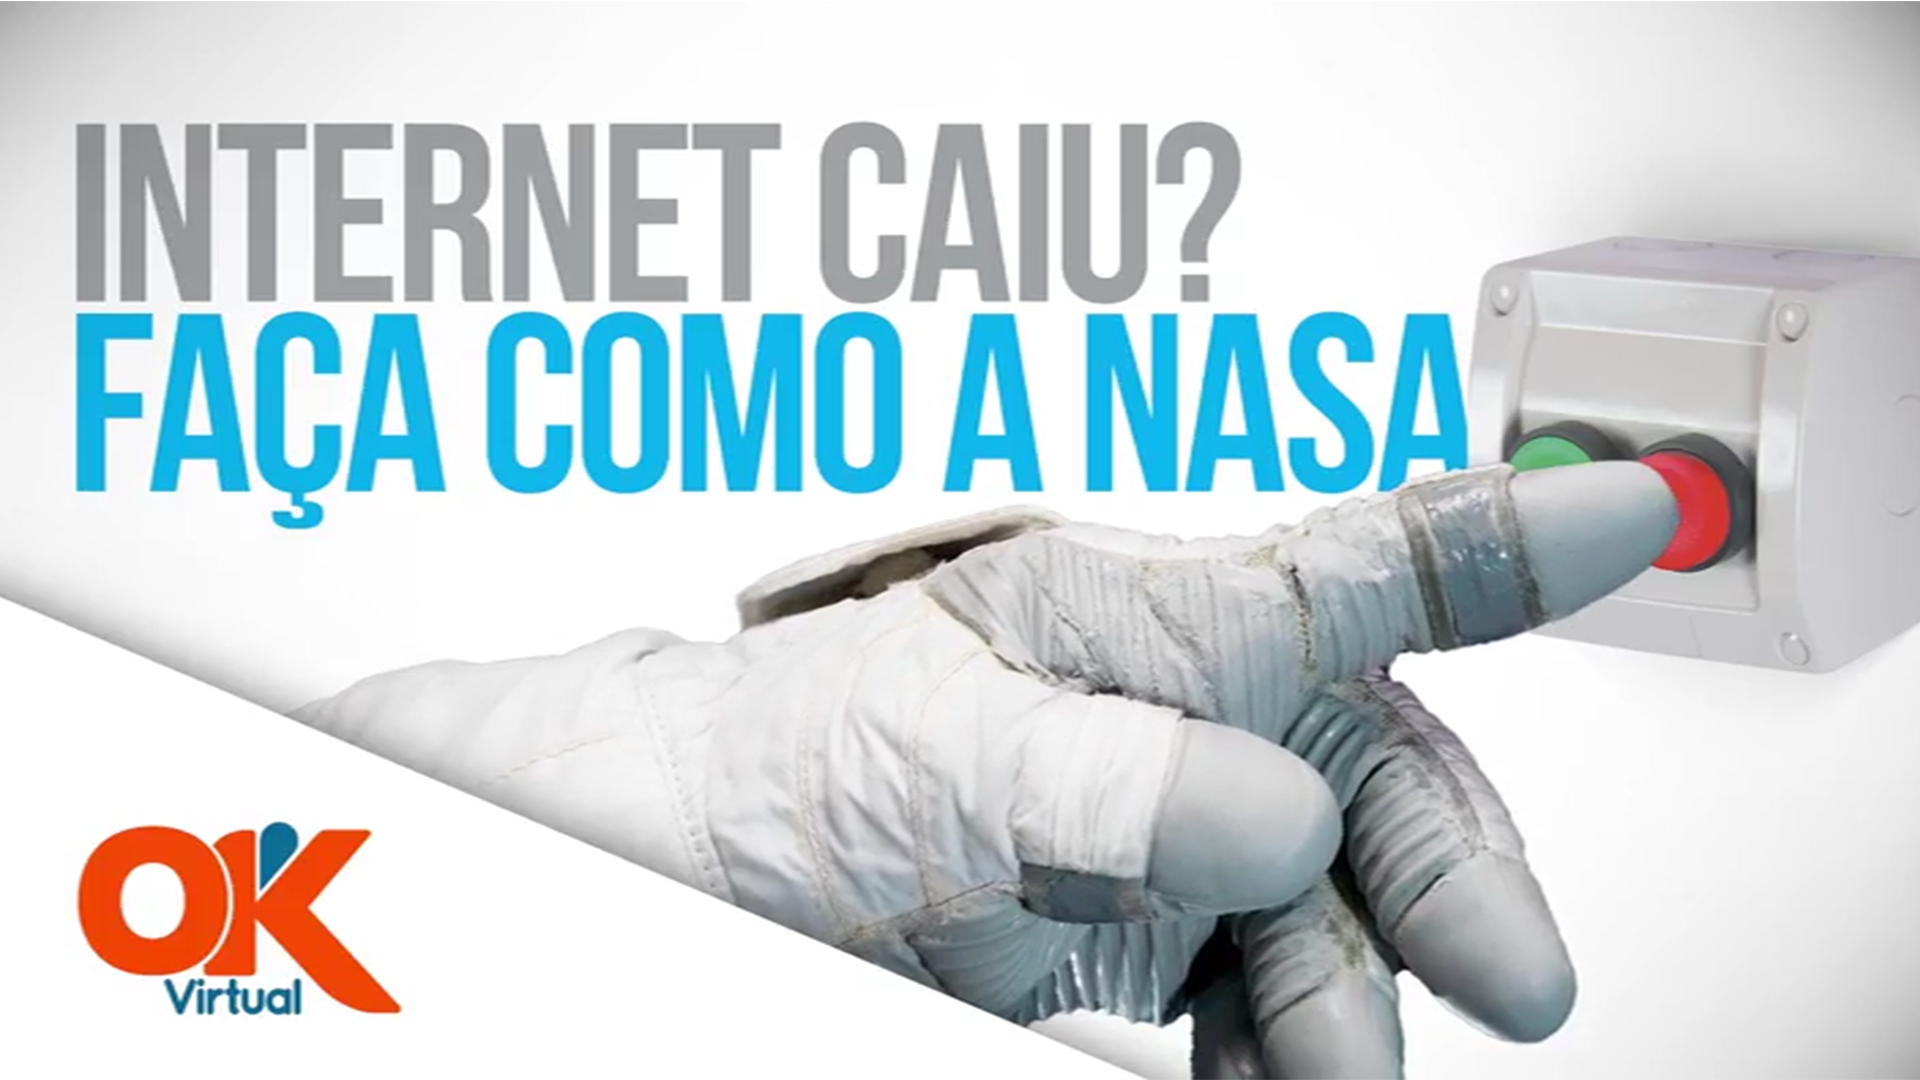 Internet caiu? Faça como a NASA.